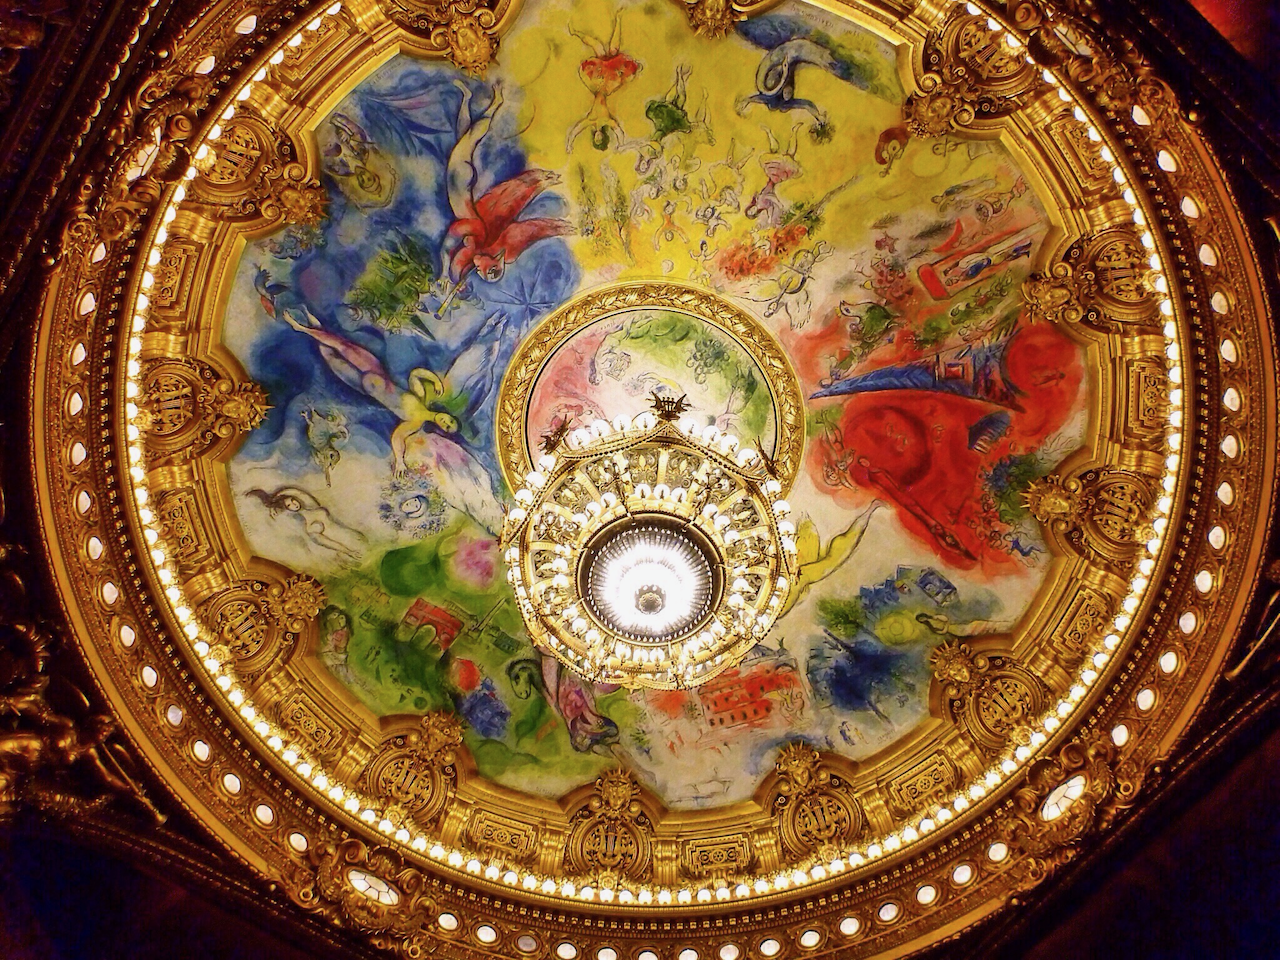 Le plafond de Chagall au Palais Garnier - Paris - France